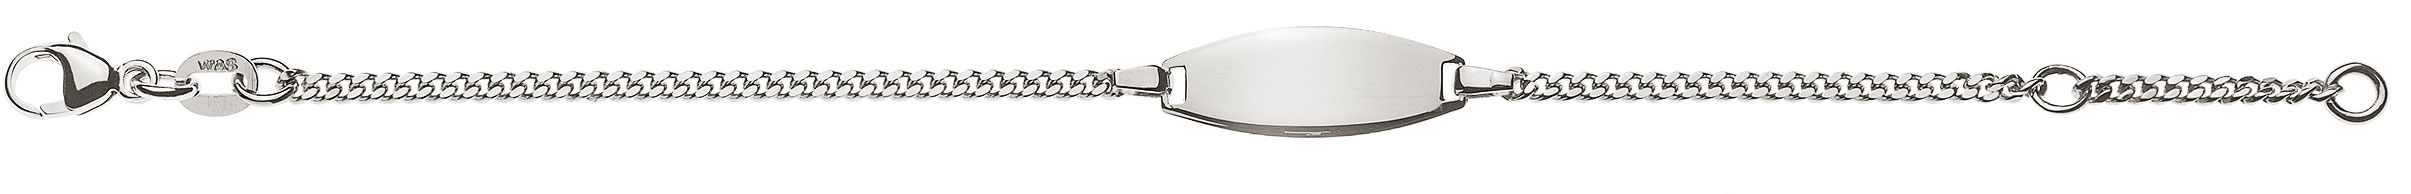 AURONOS Prestige ID-Bracelet 18k Weissgold Panzerkette geschliffen 18cm